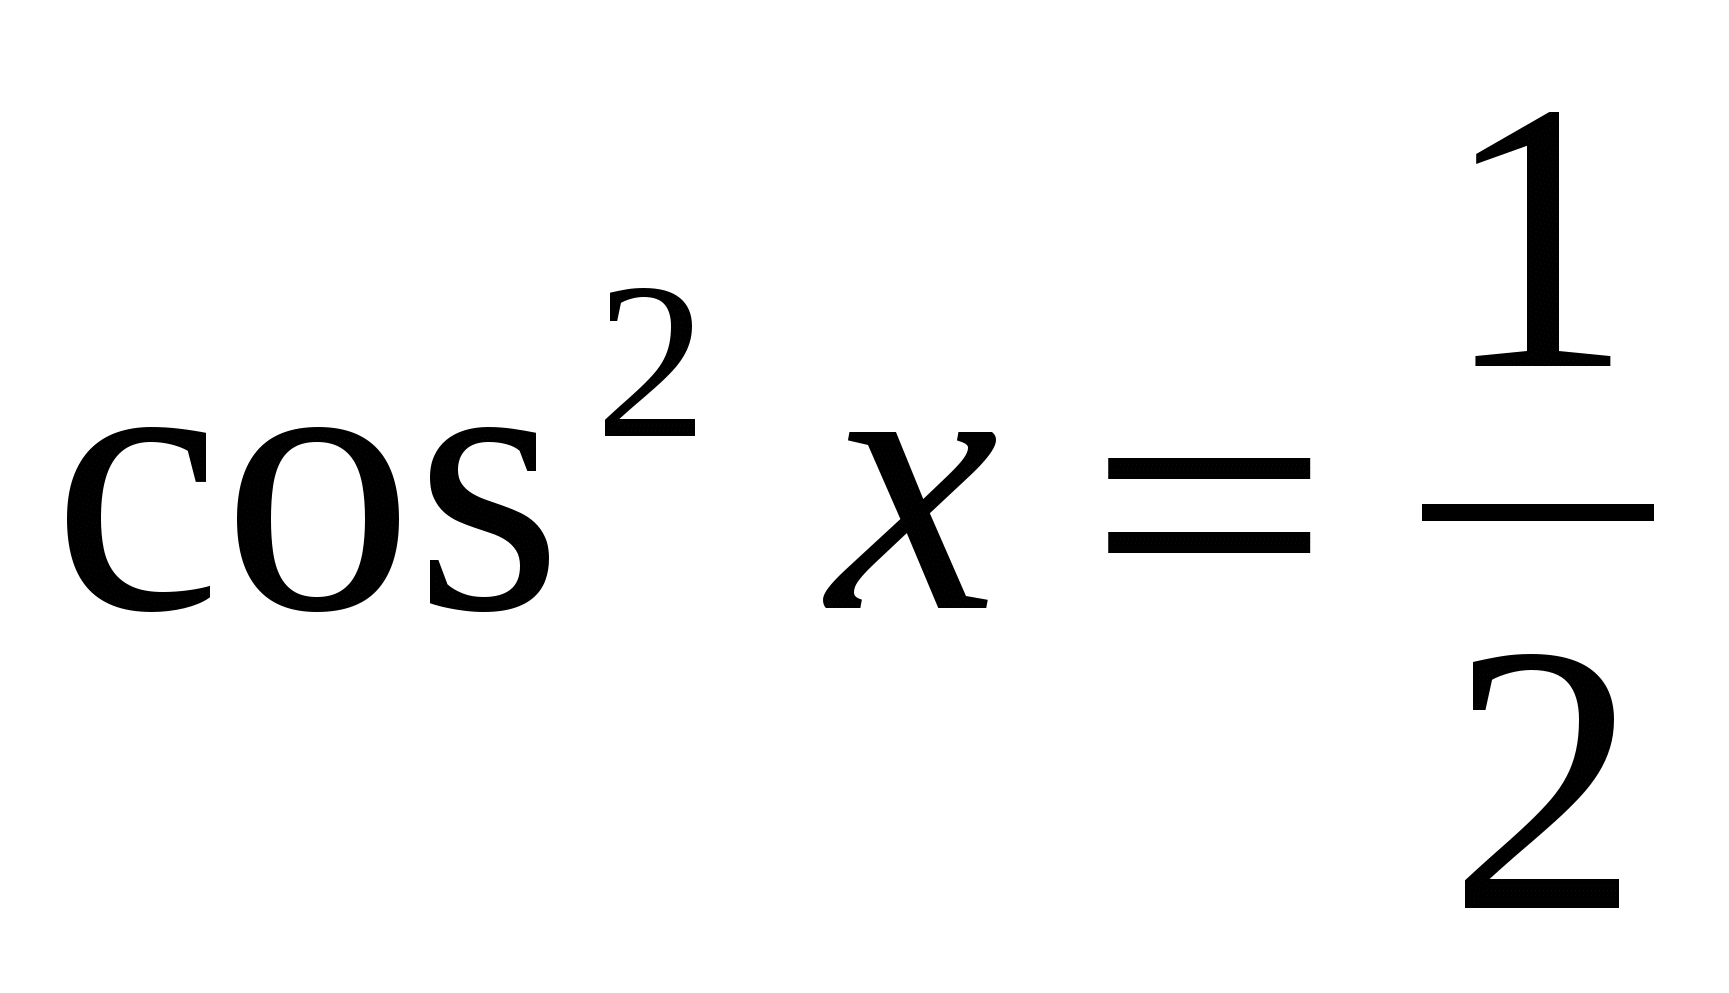 2 cos2 x 1 0. 1-Cos2x. Cos2x=1/2. 2соs2x+1. 2cos^2-1.